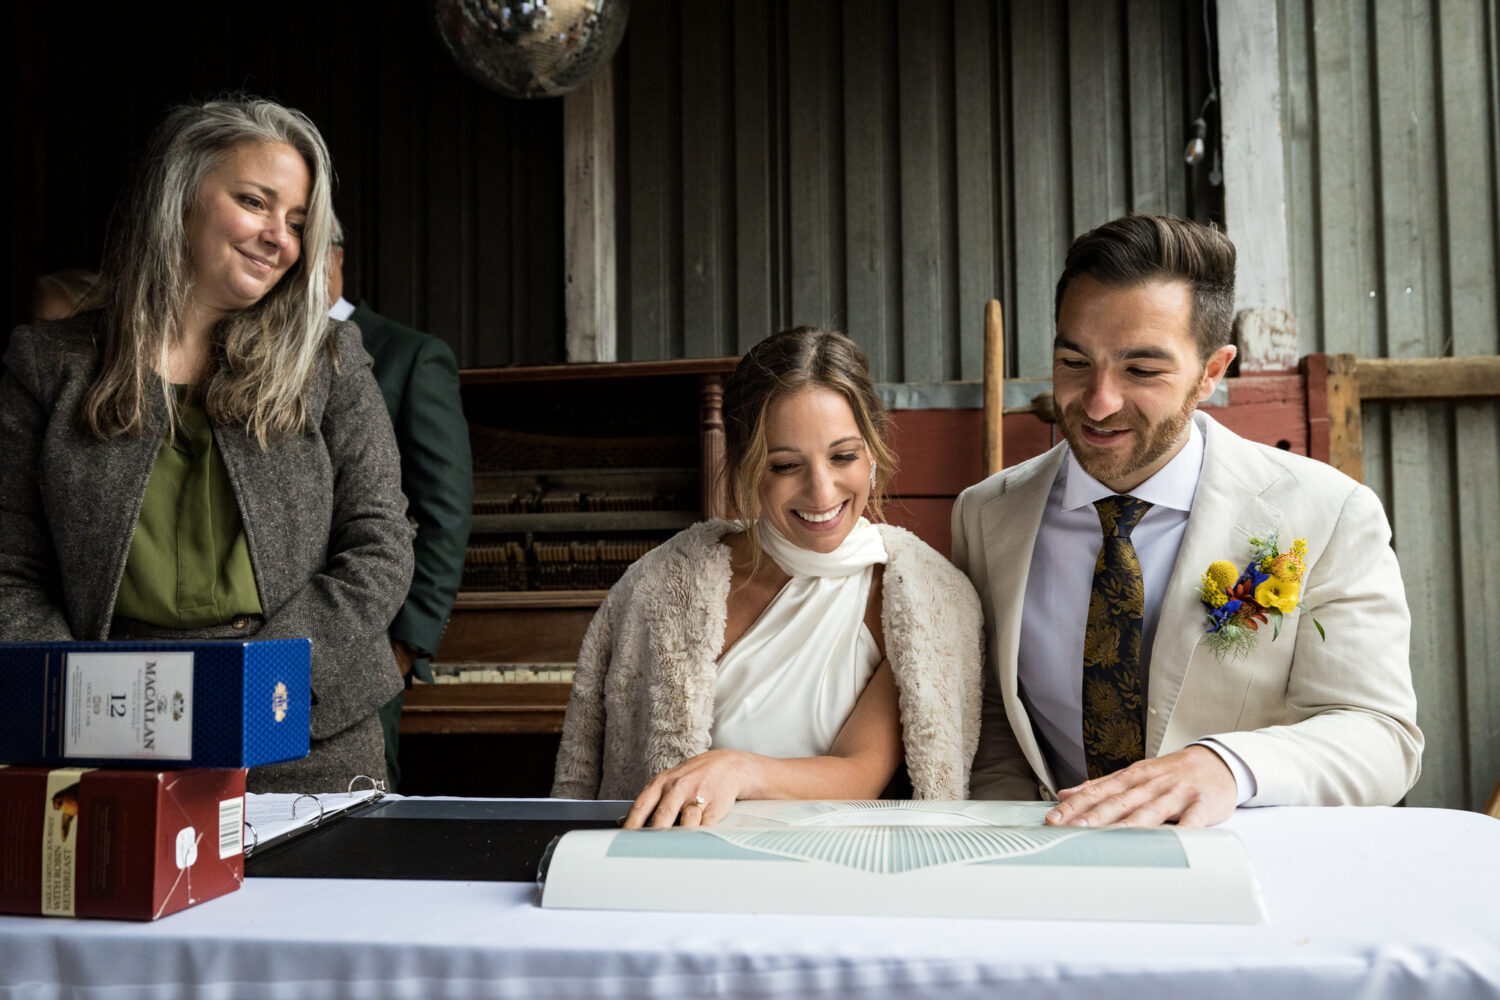 Signing the ketubah at a Jewish Lake Tahoe wedding.